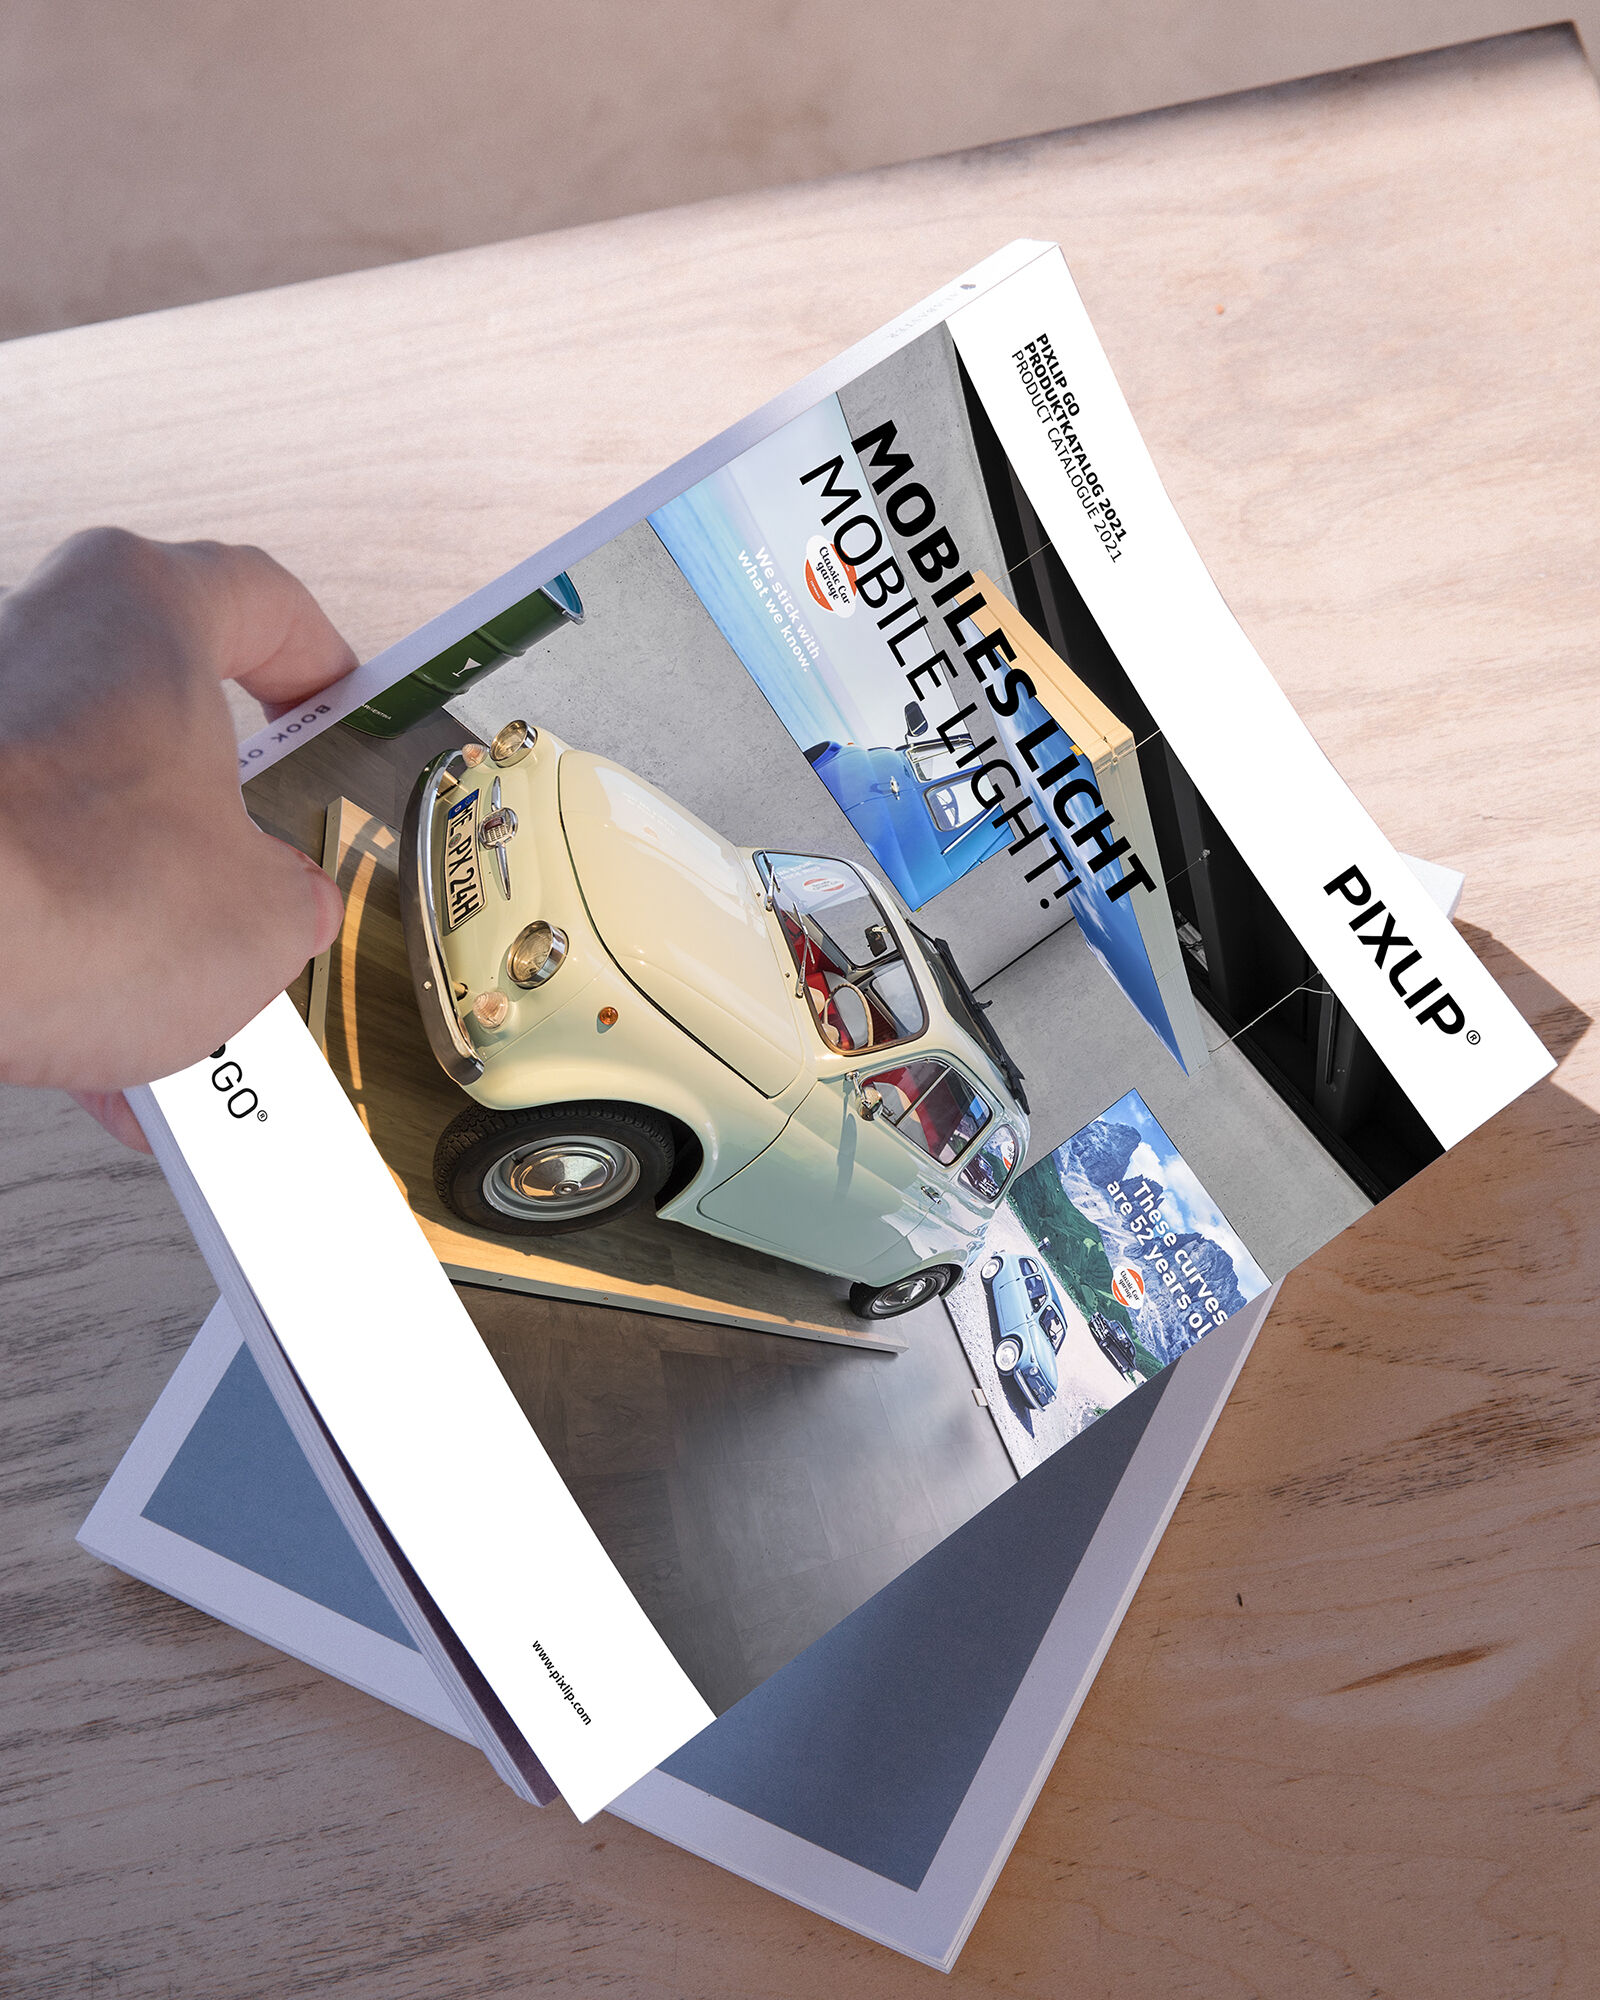 Hand greift nach Katalog von Pixlip mit einem Auto abgebildet, welches mit einem anderen Magazin auf einem Holztisch lag